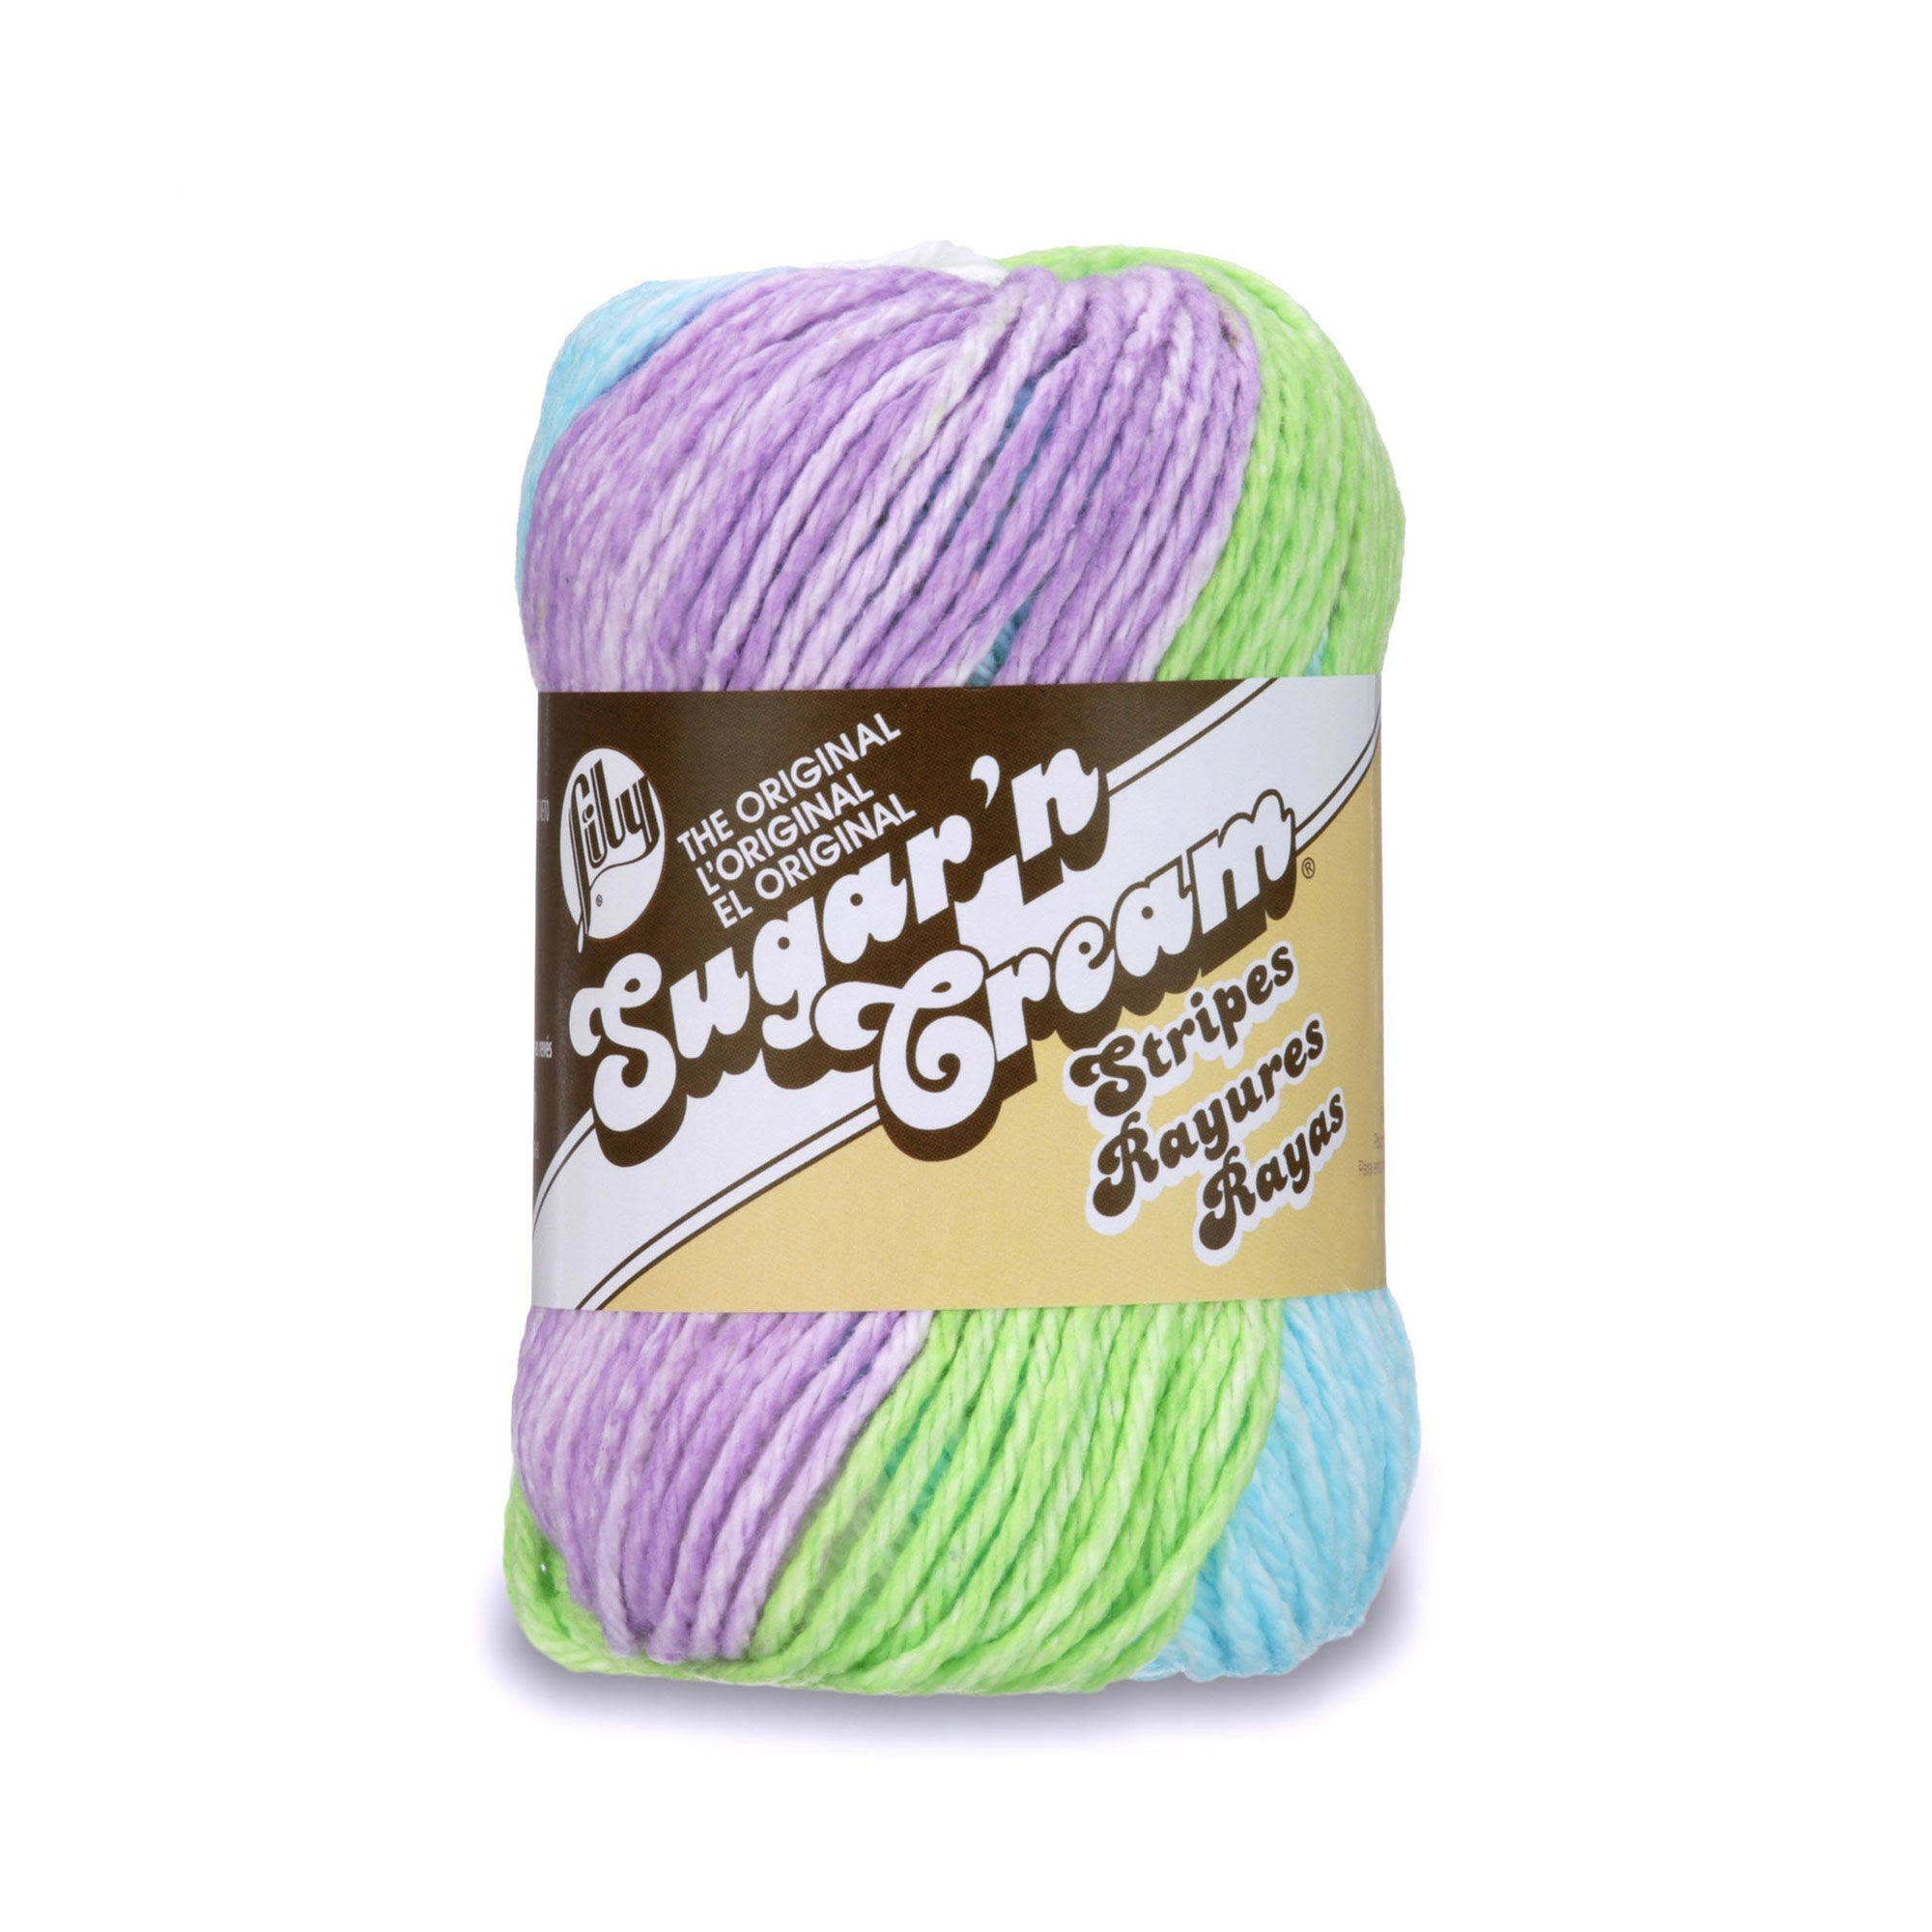 LILY Sugar 'N Cream Cotton Stripes Yarn 56.7g- Violet